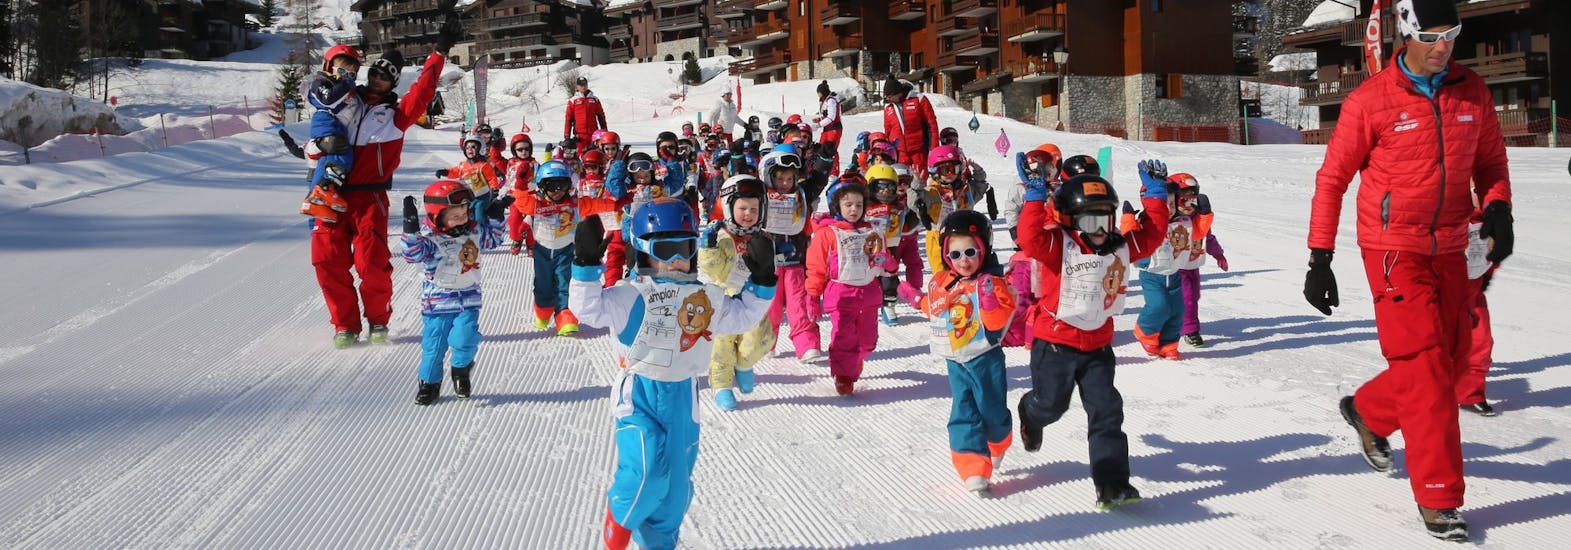 Cours de ski Enfants Club Piou Piou (3-4 ans)